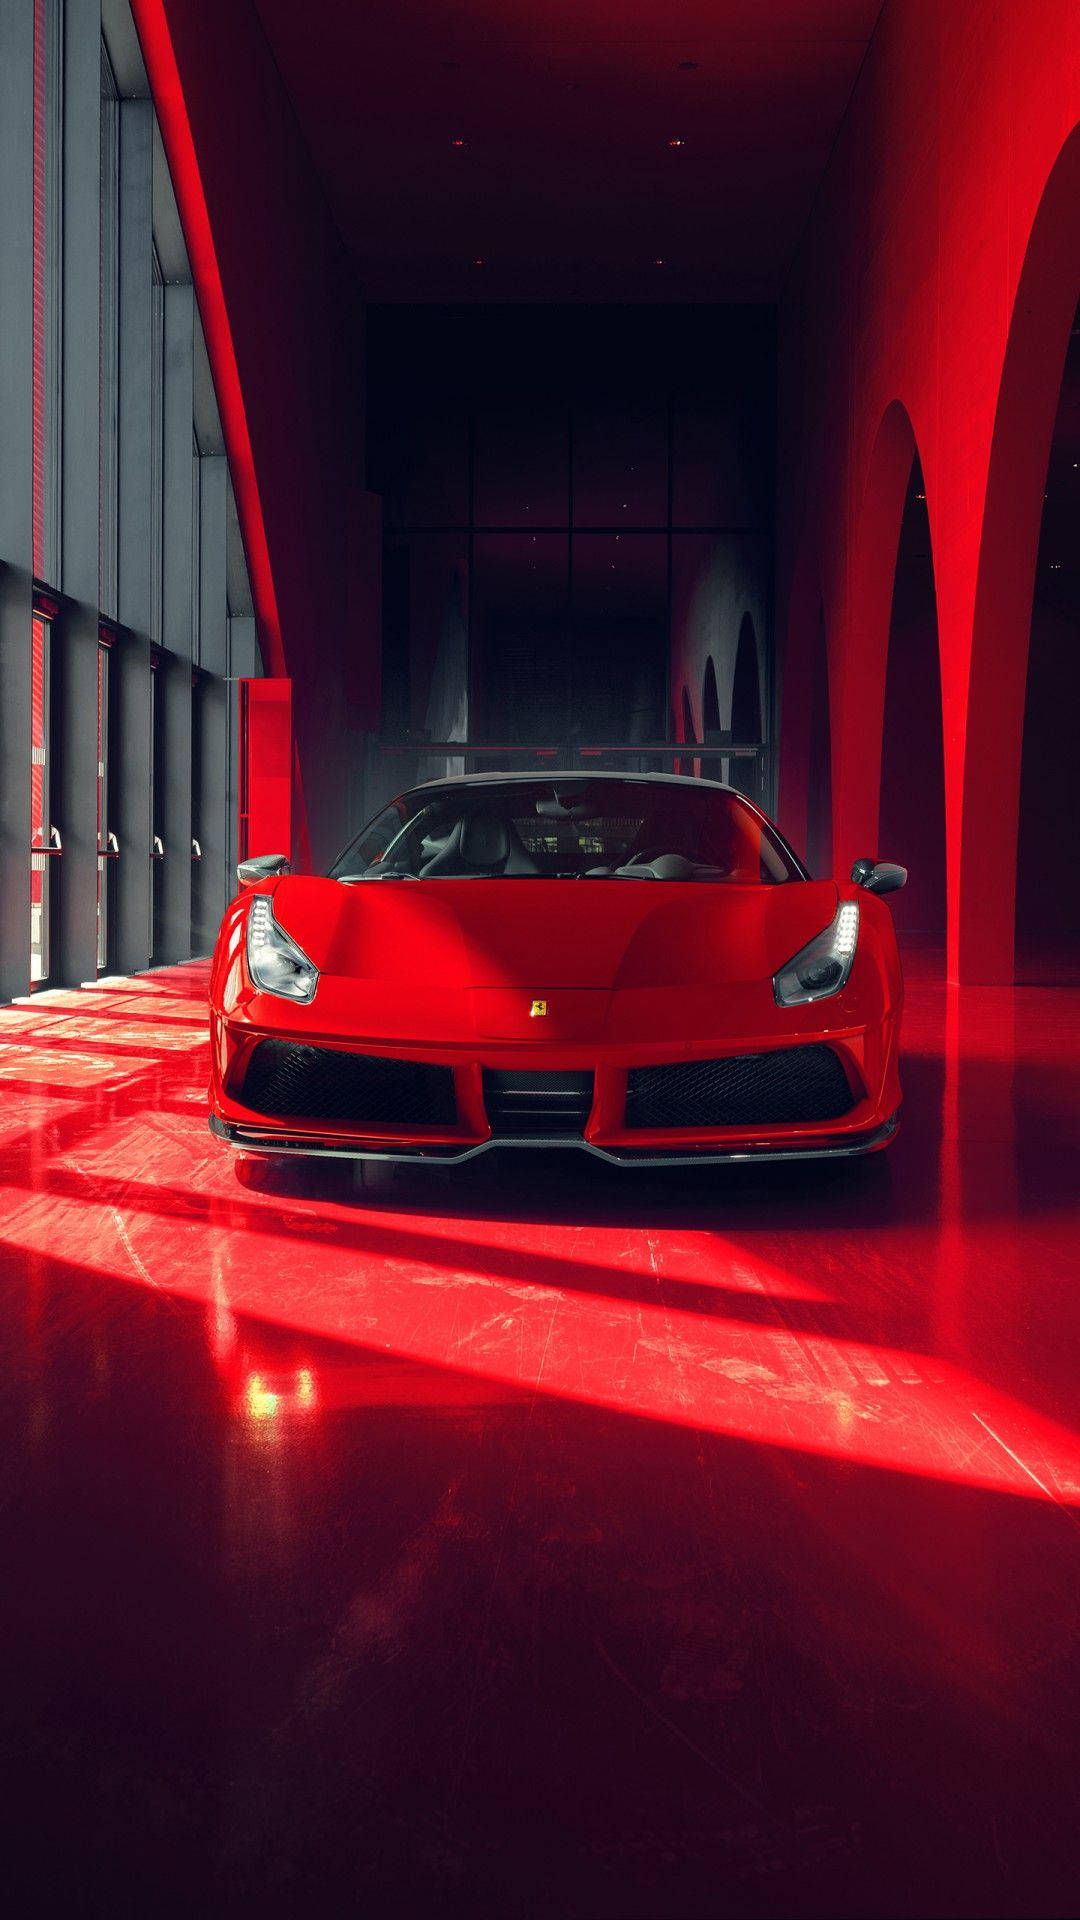 Futuristic Ferrari Iphone Background